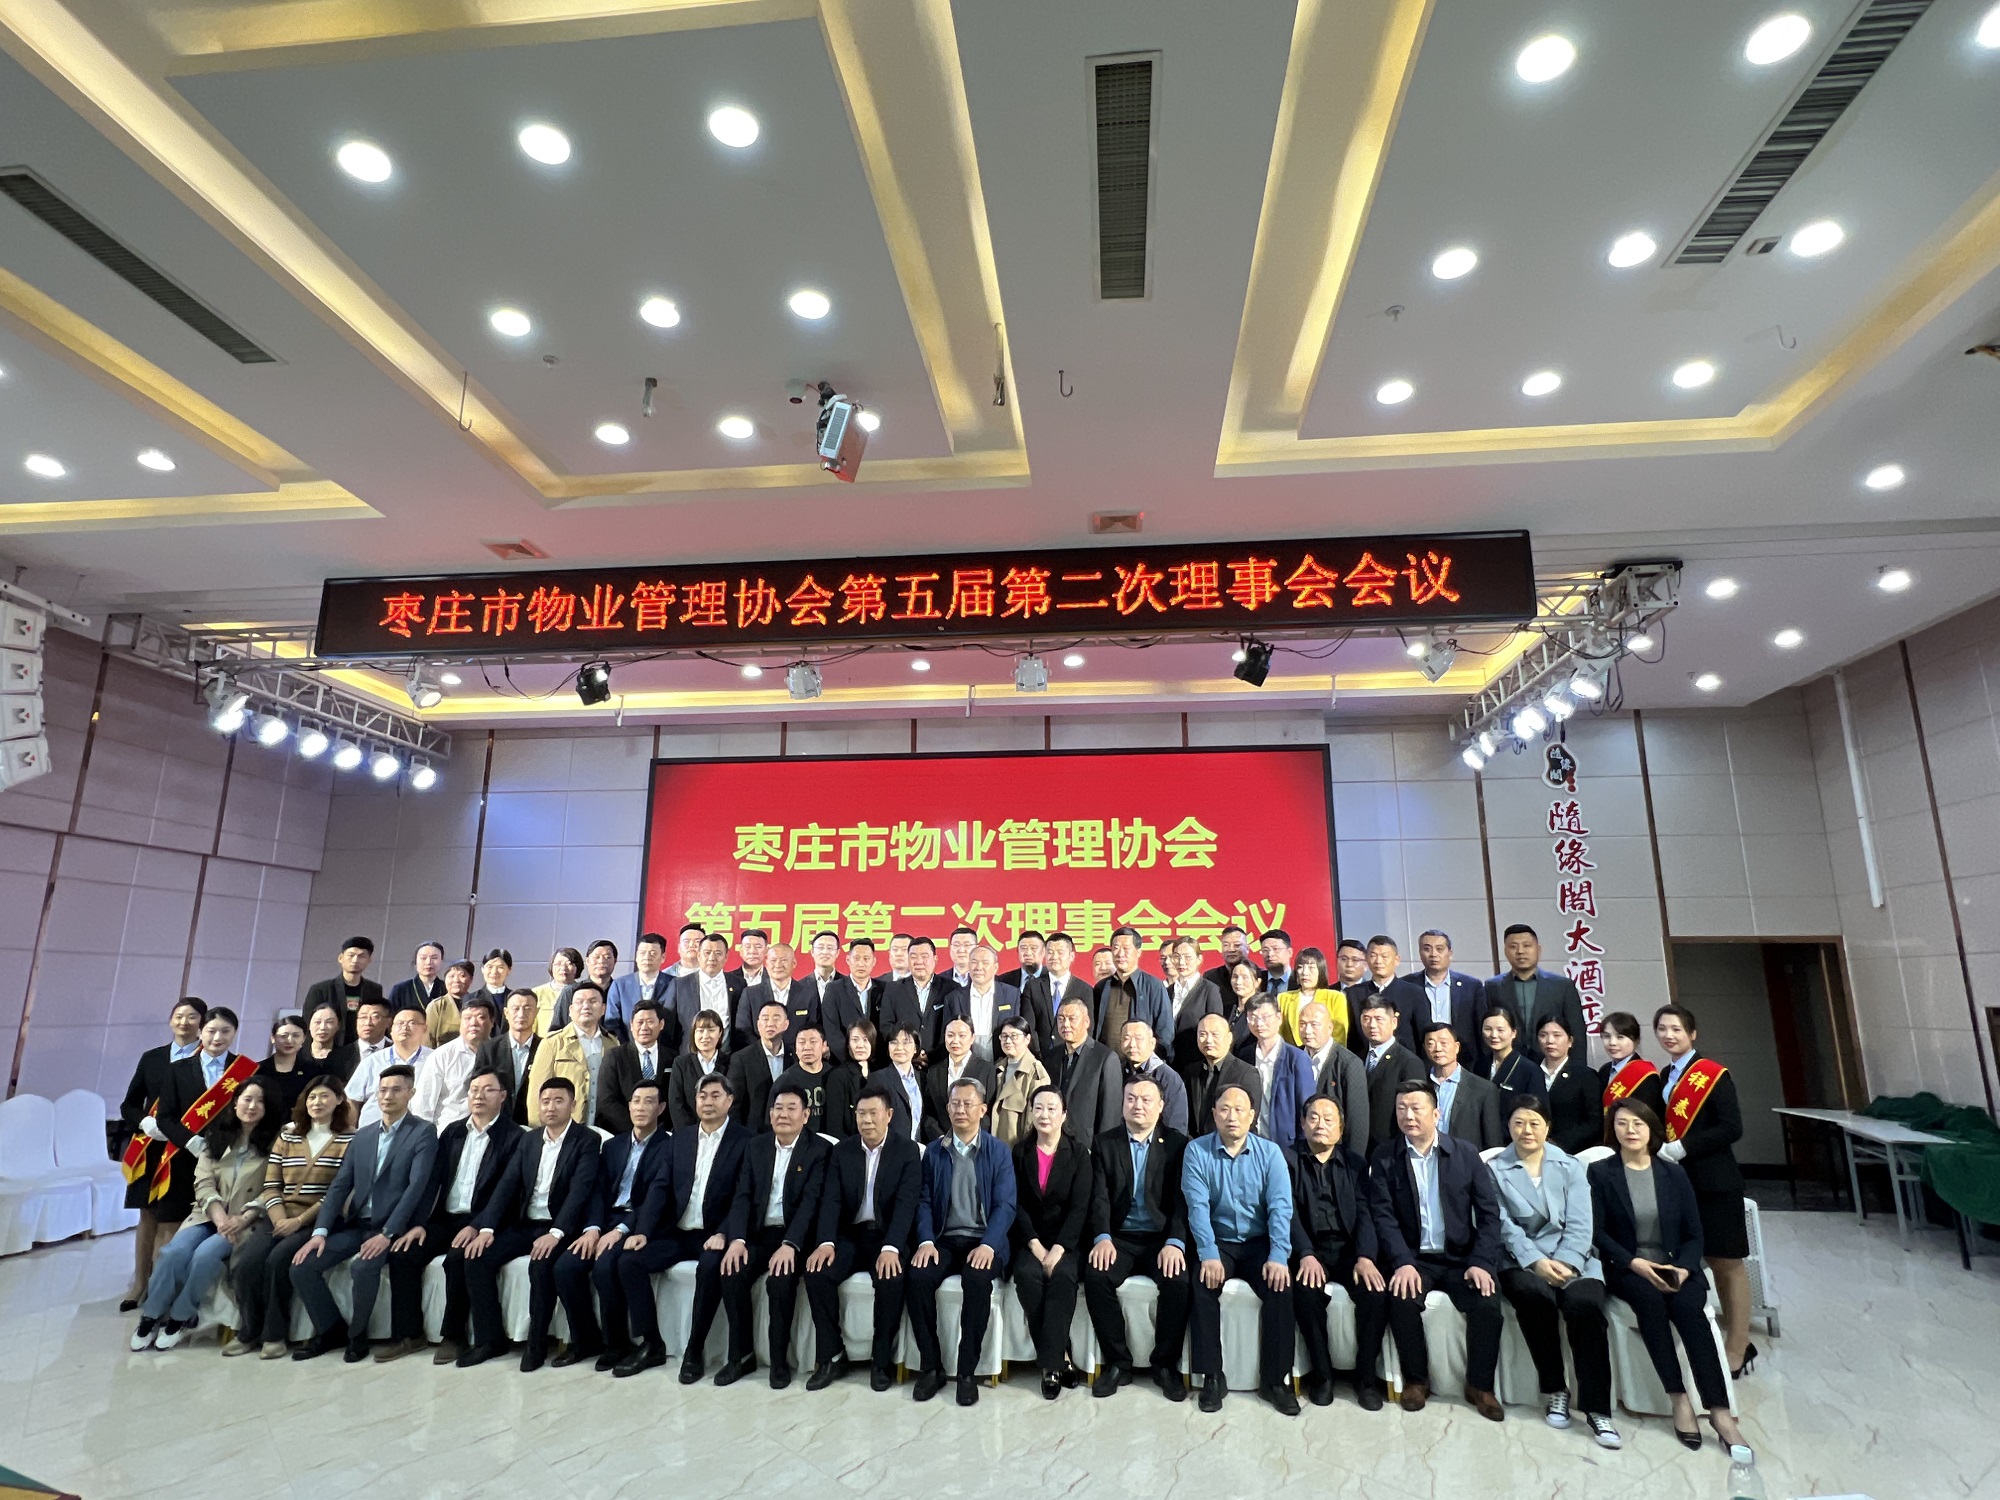 润华物业枣庄分公司成功晋升为枣庄市物业管理行业协会副会长单位